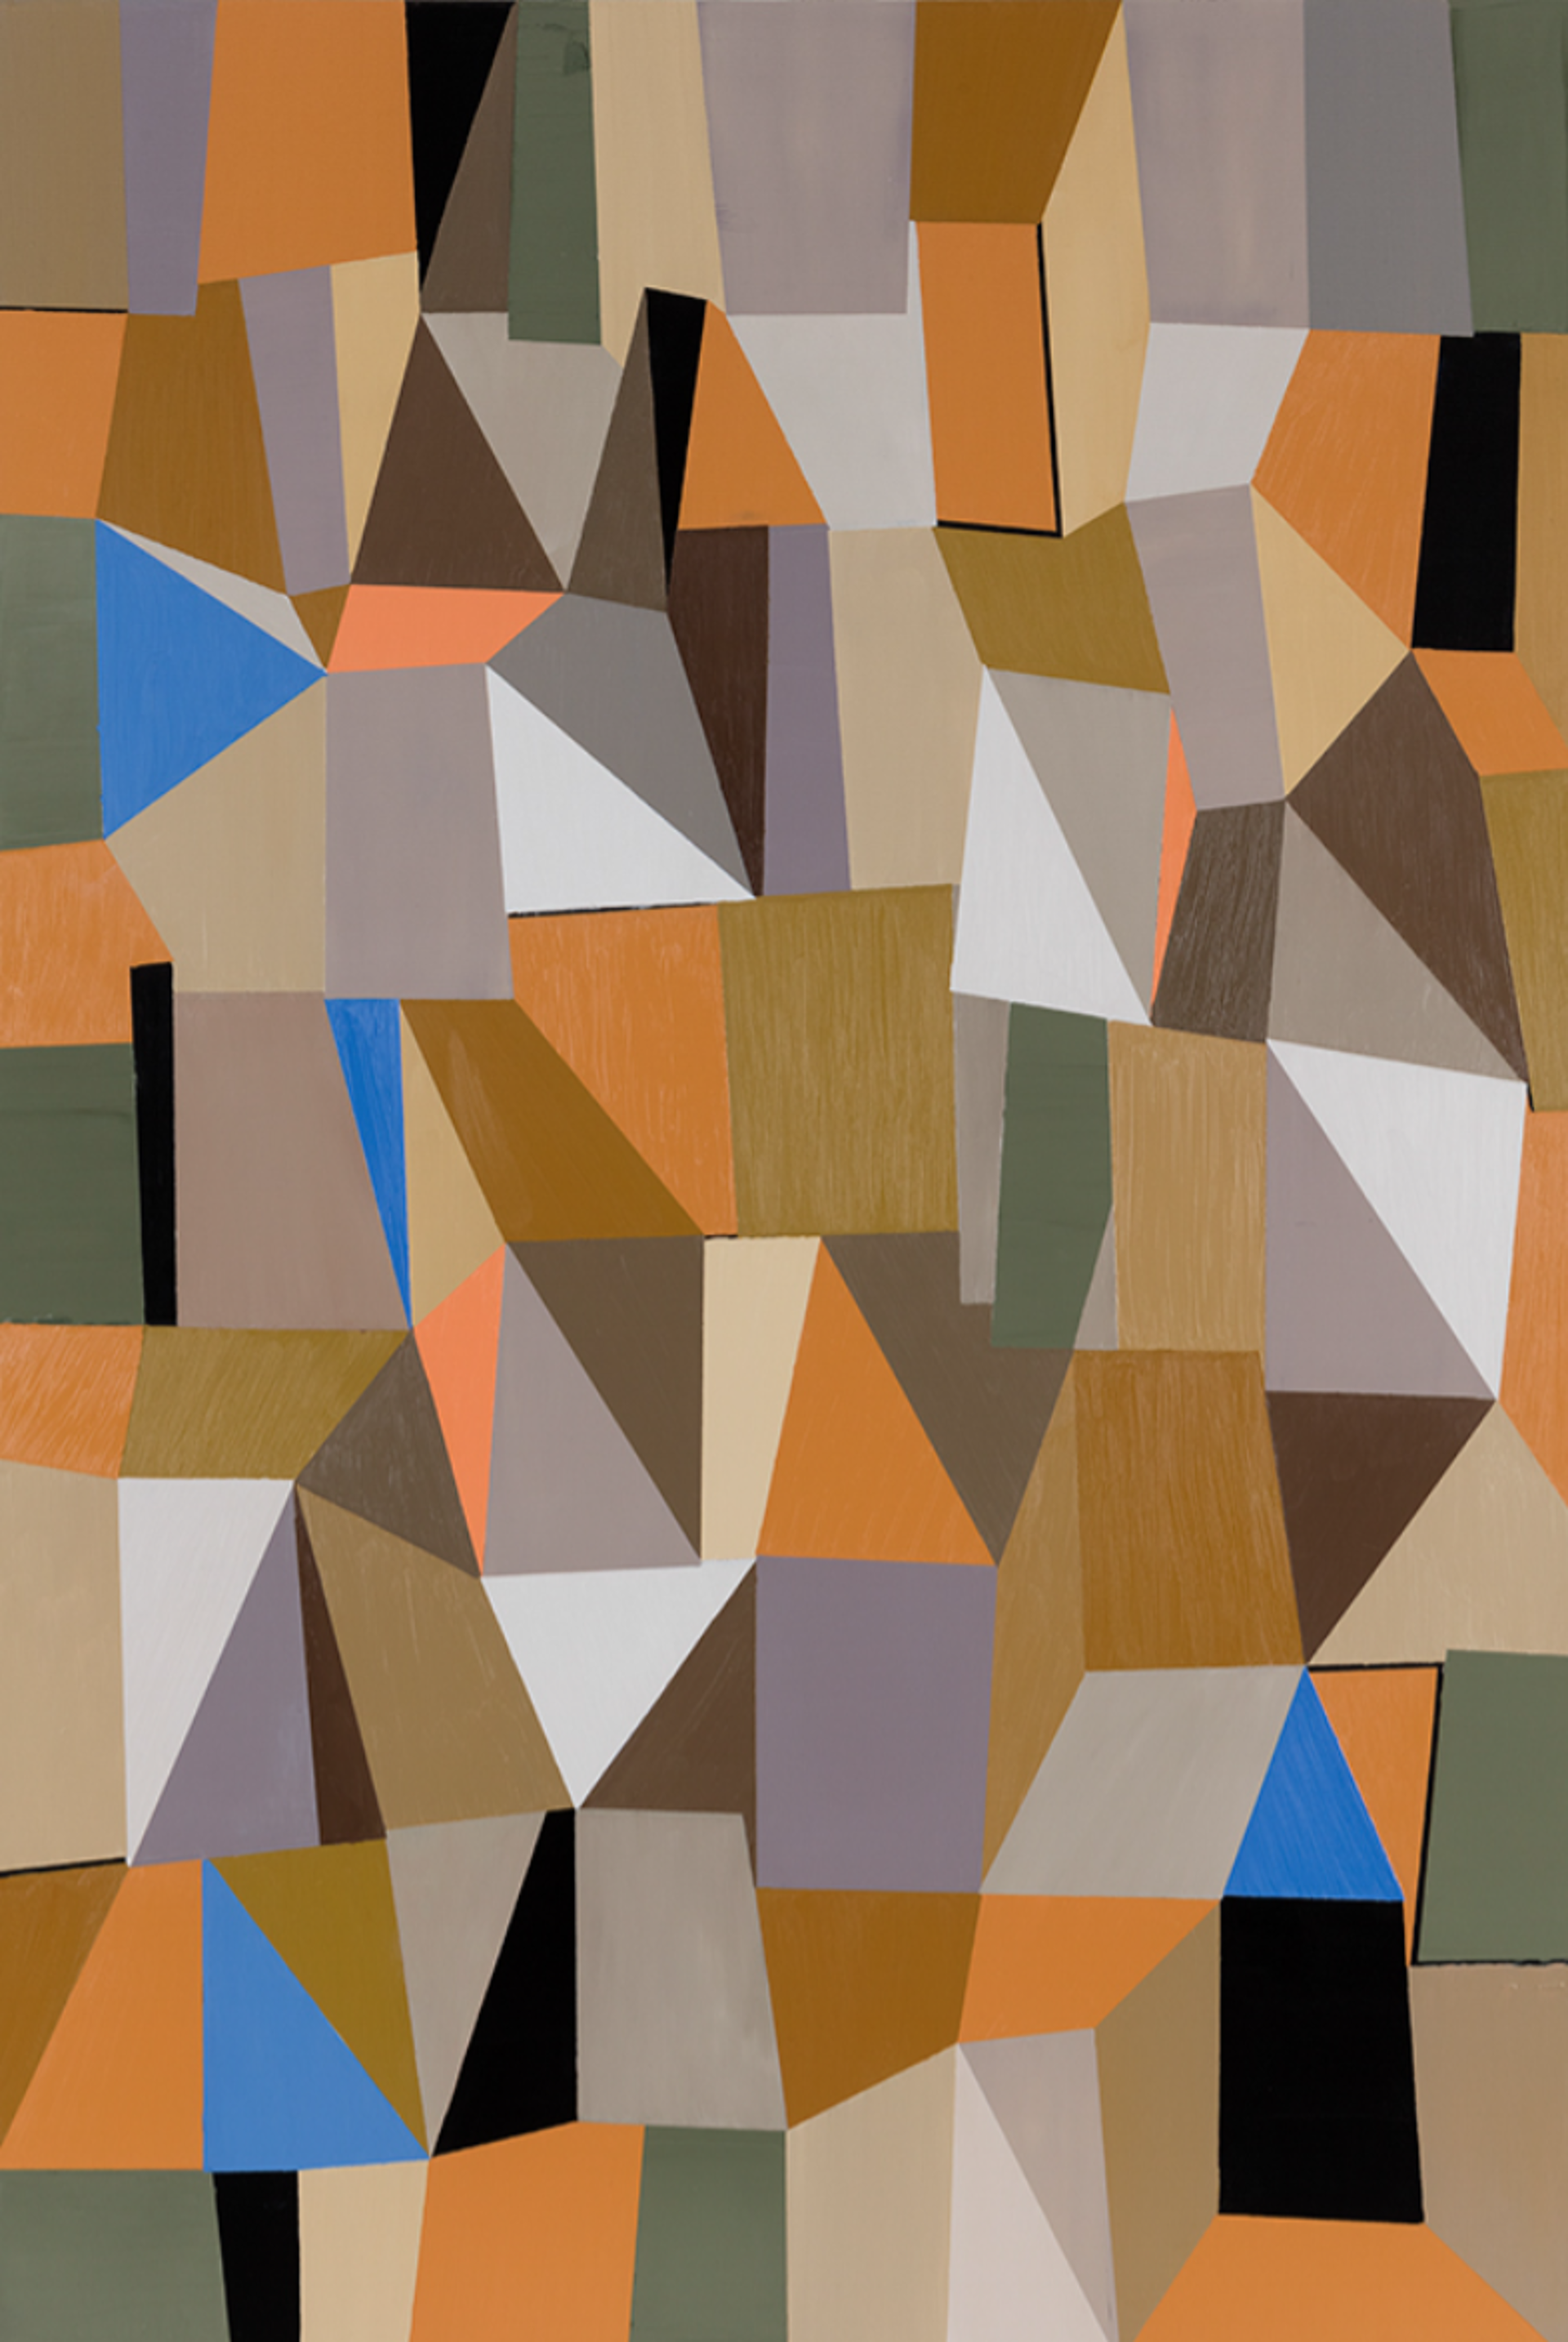 Mosaic 3 by Jeff Long